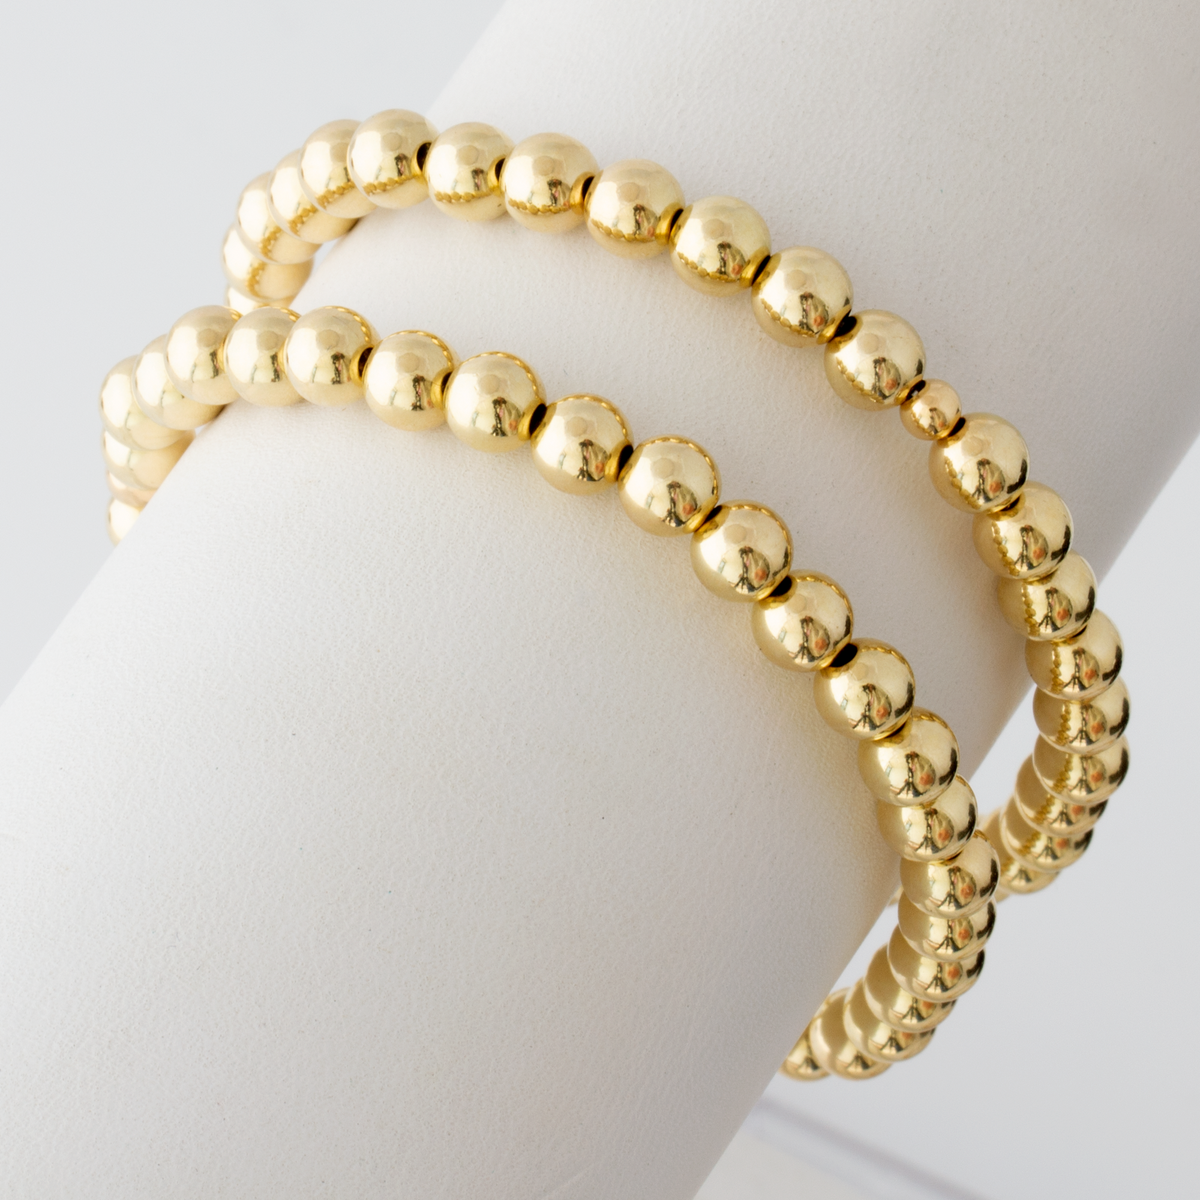 Mother/Daughter Bracelet Set - White Pearls/Murano Beads - 5mm/8mm - MARCELA